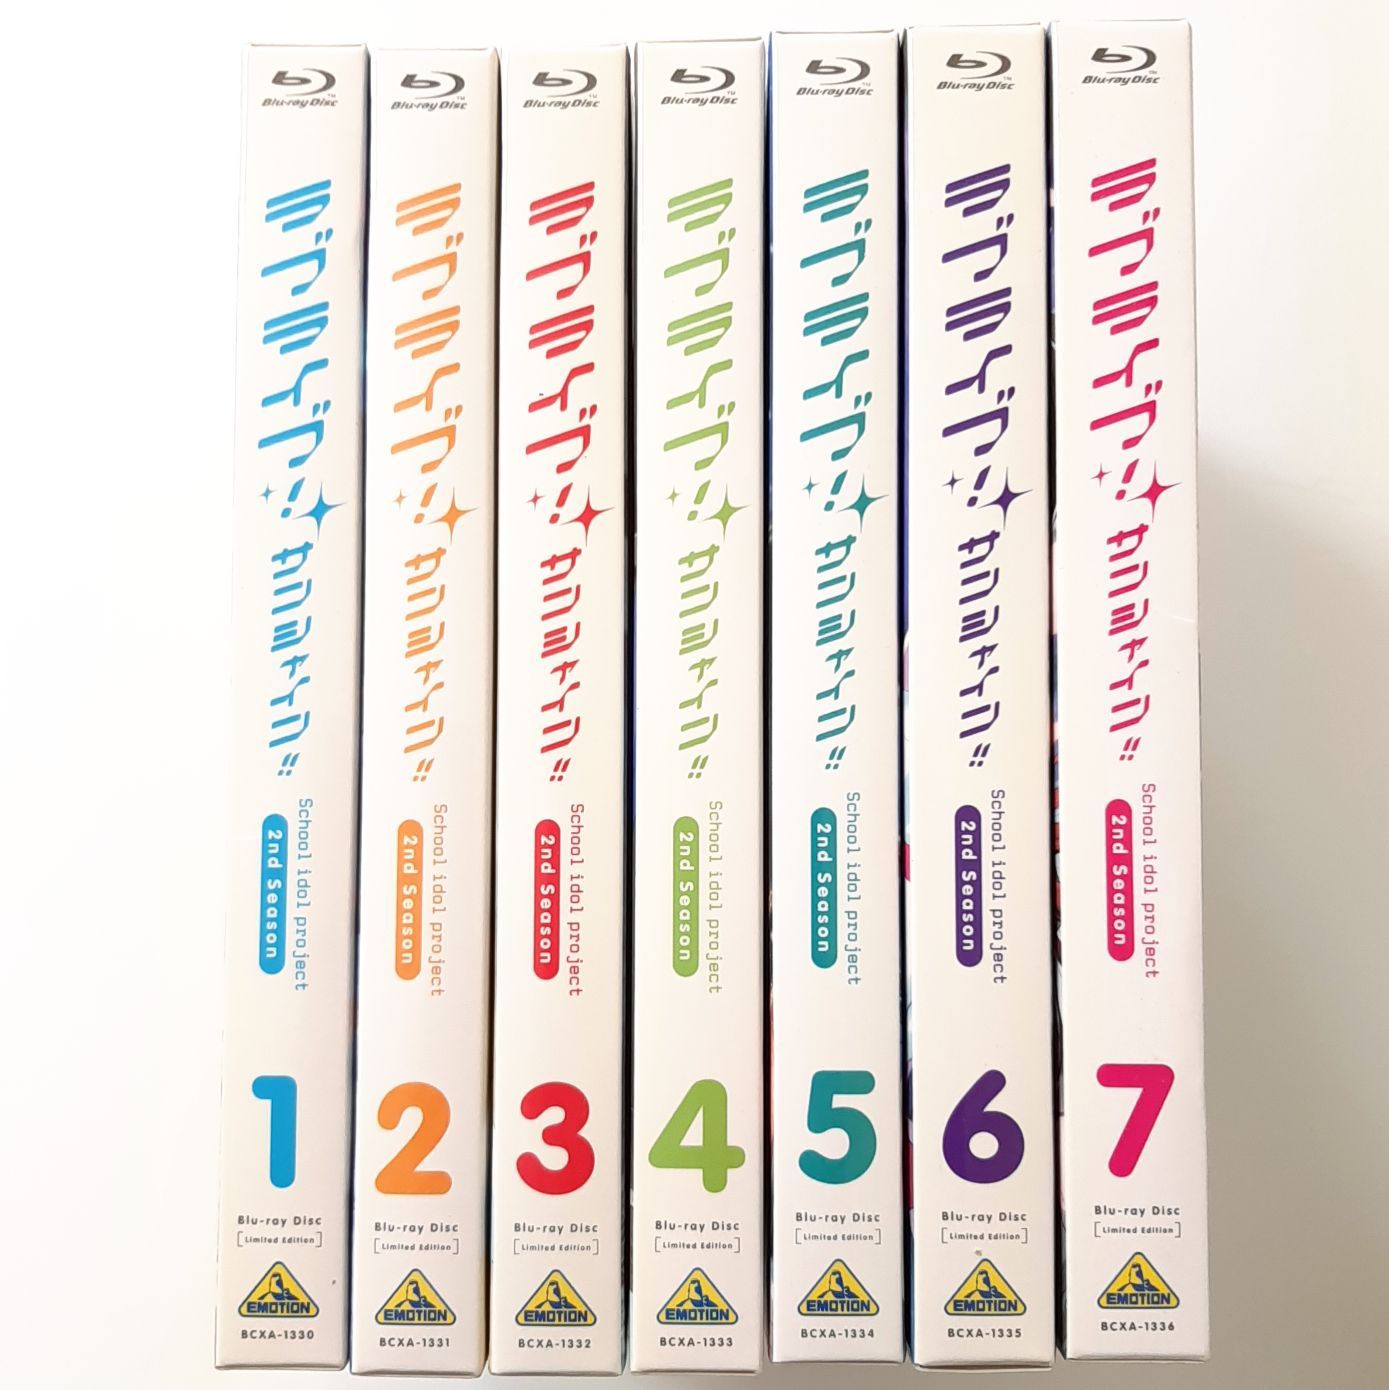 ラブライブ! サンシャイン!! 2nd Season Blu-ray 特装限定版 全7巻 